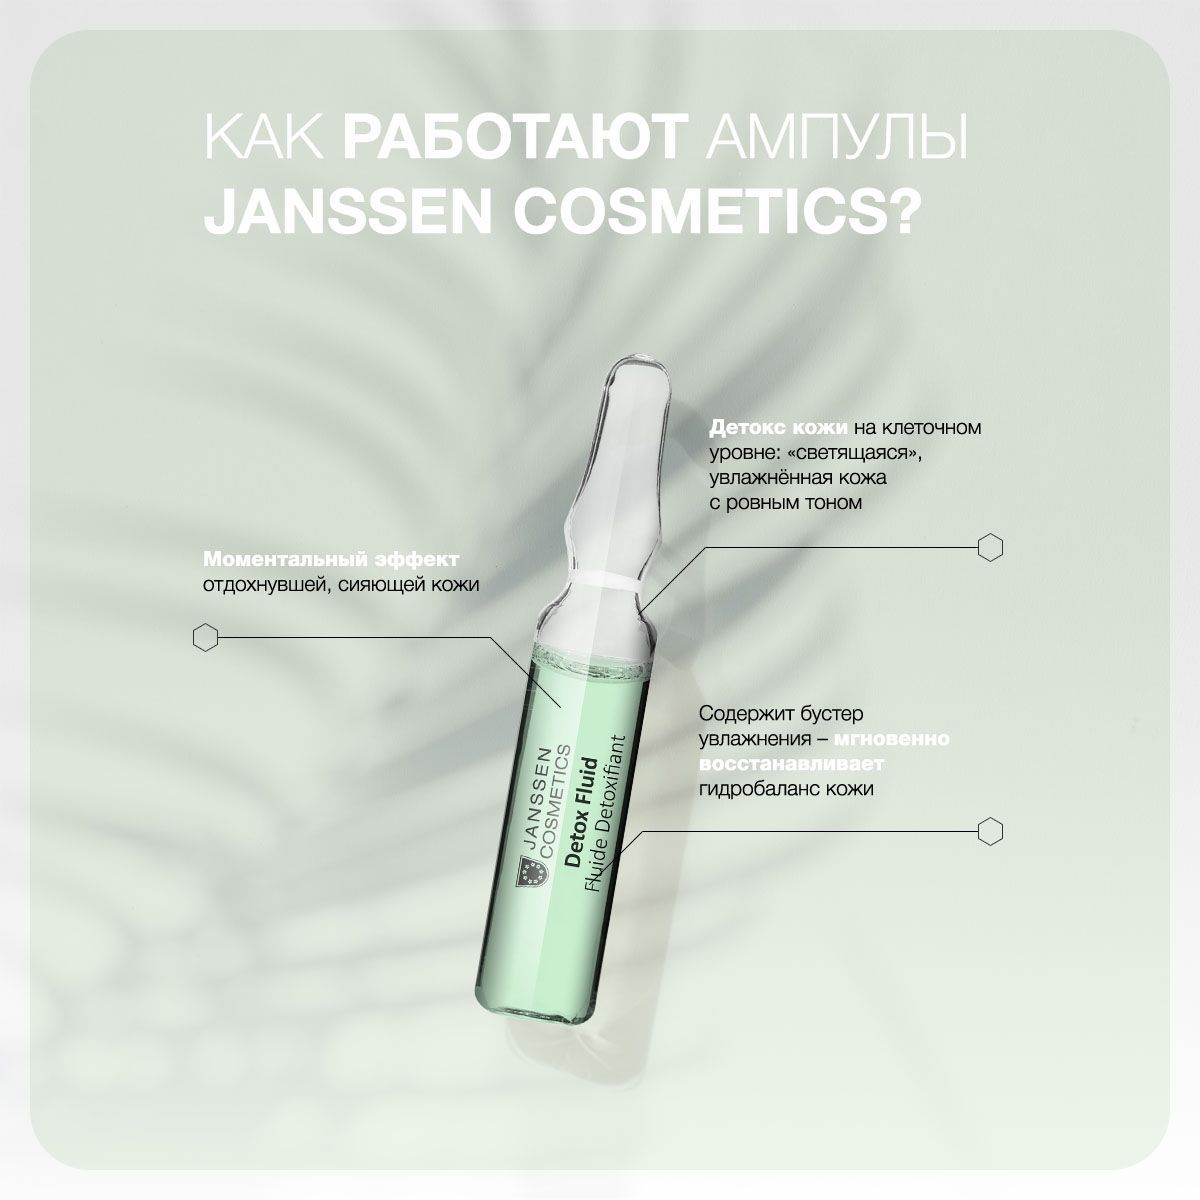 Детокс-сыворотка в ампулах Janssen Cosmetics Detox Fluid 1х2 мл inspira cosmetics разглаживающая морщины и устраняющая сухость сыворотка 30 мл